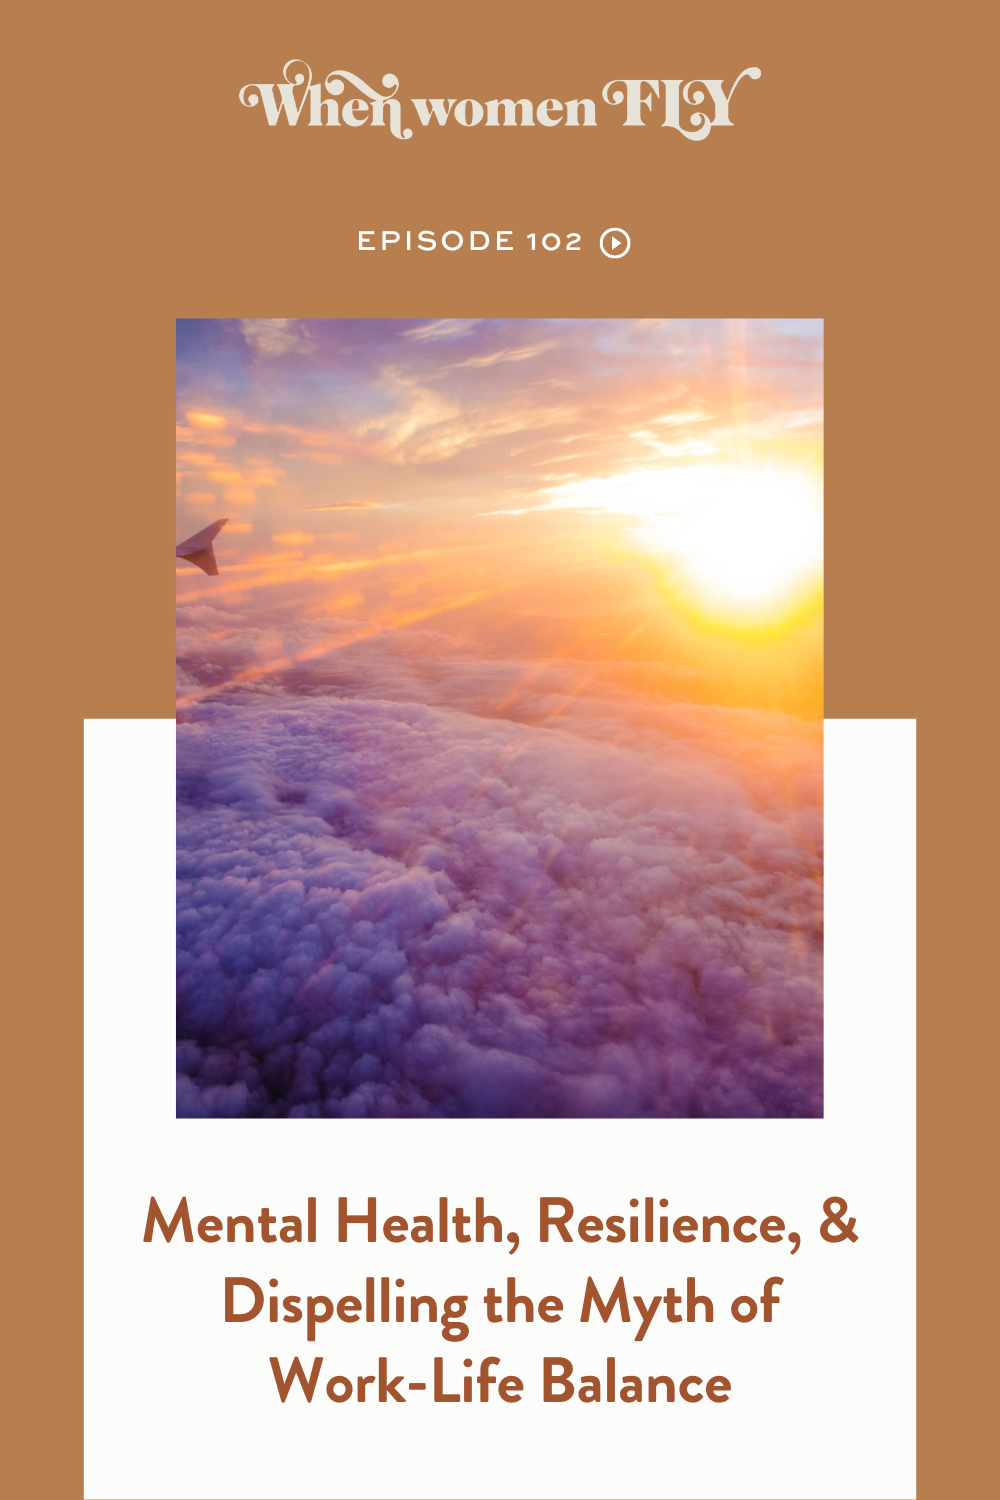 WWF Mental Health-Resilience-Work-Life Balance Myth.png